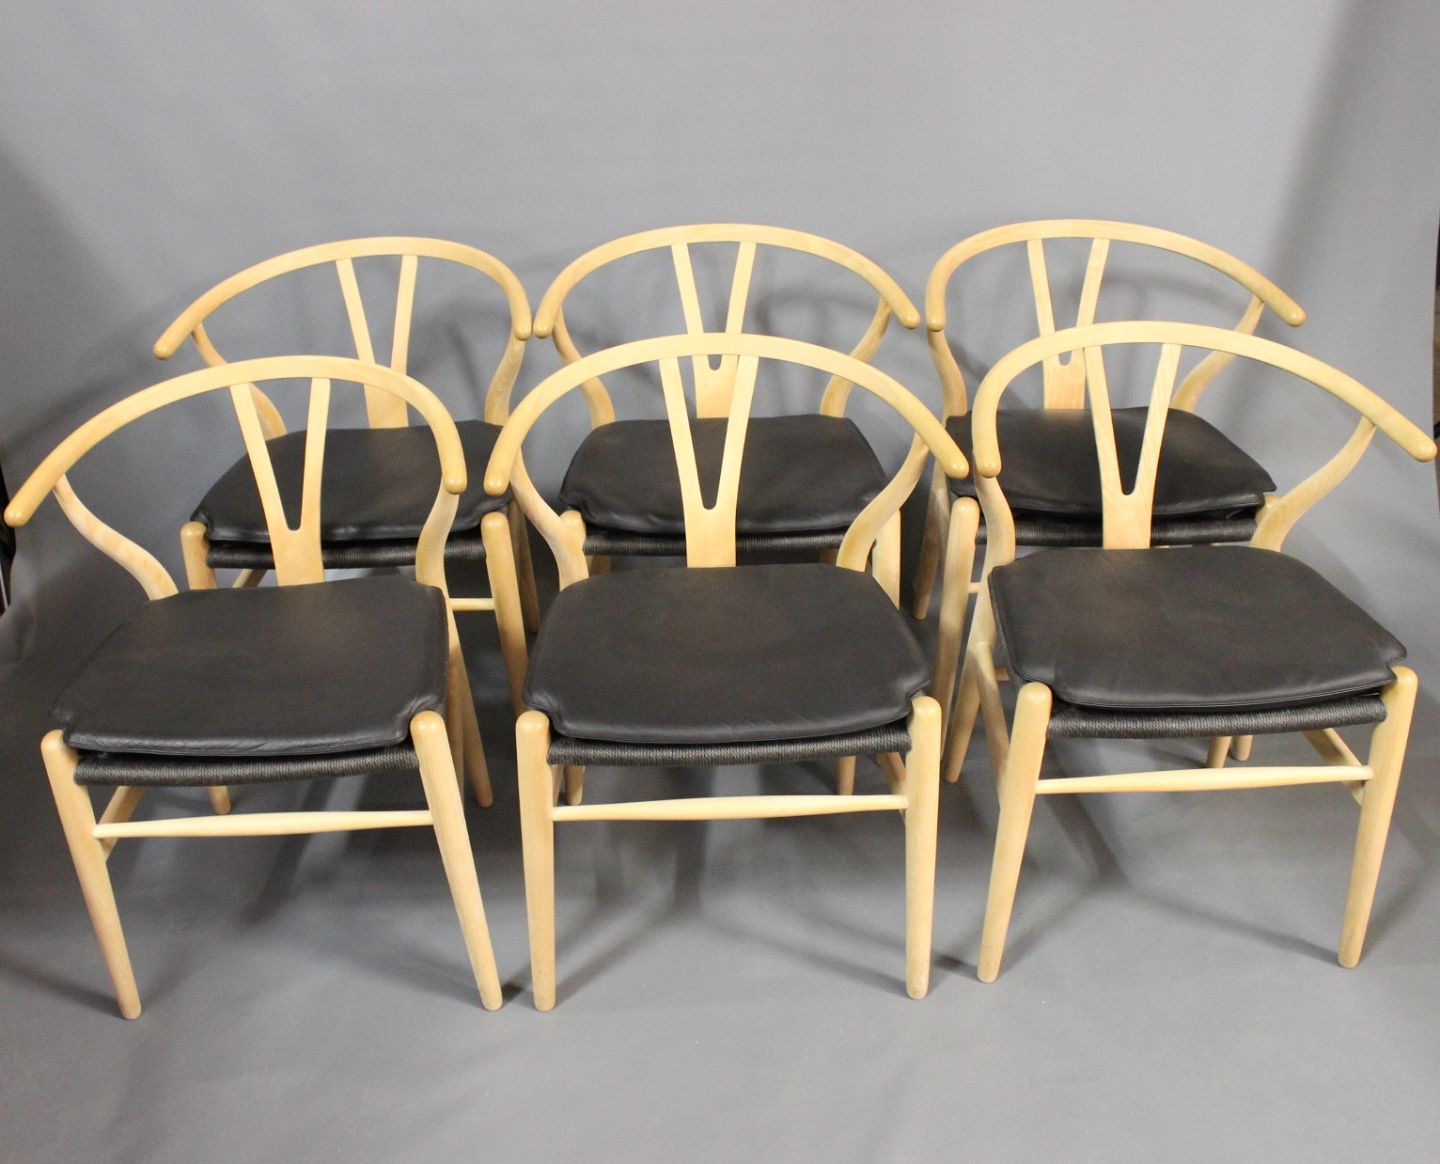 www.Antikvitet.net - Seks stole, model af Hans J. Wegner. 5000m2 udstilling.